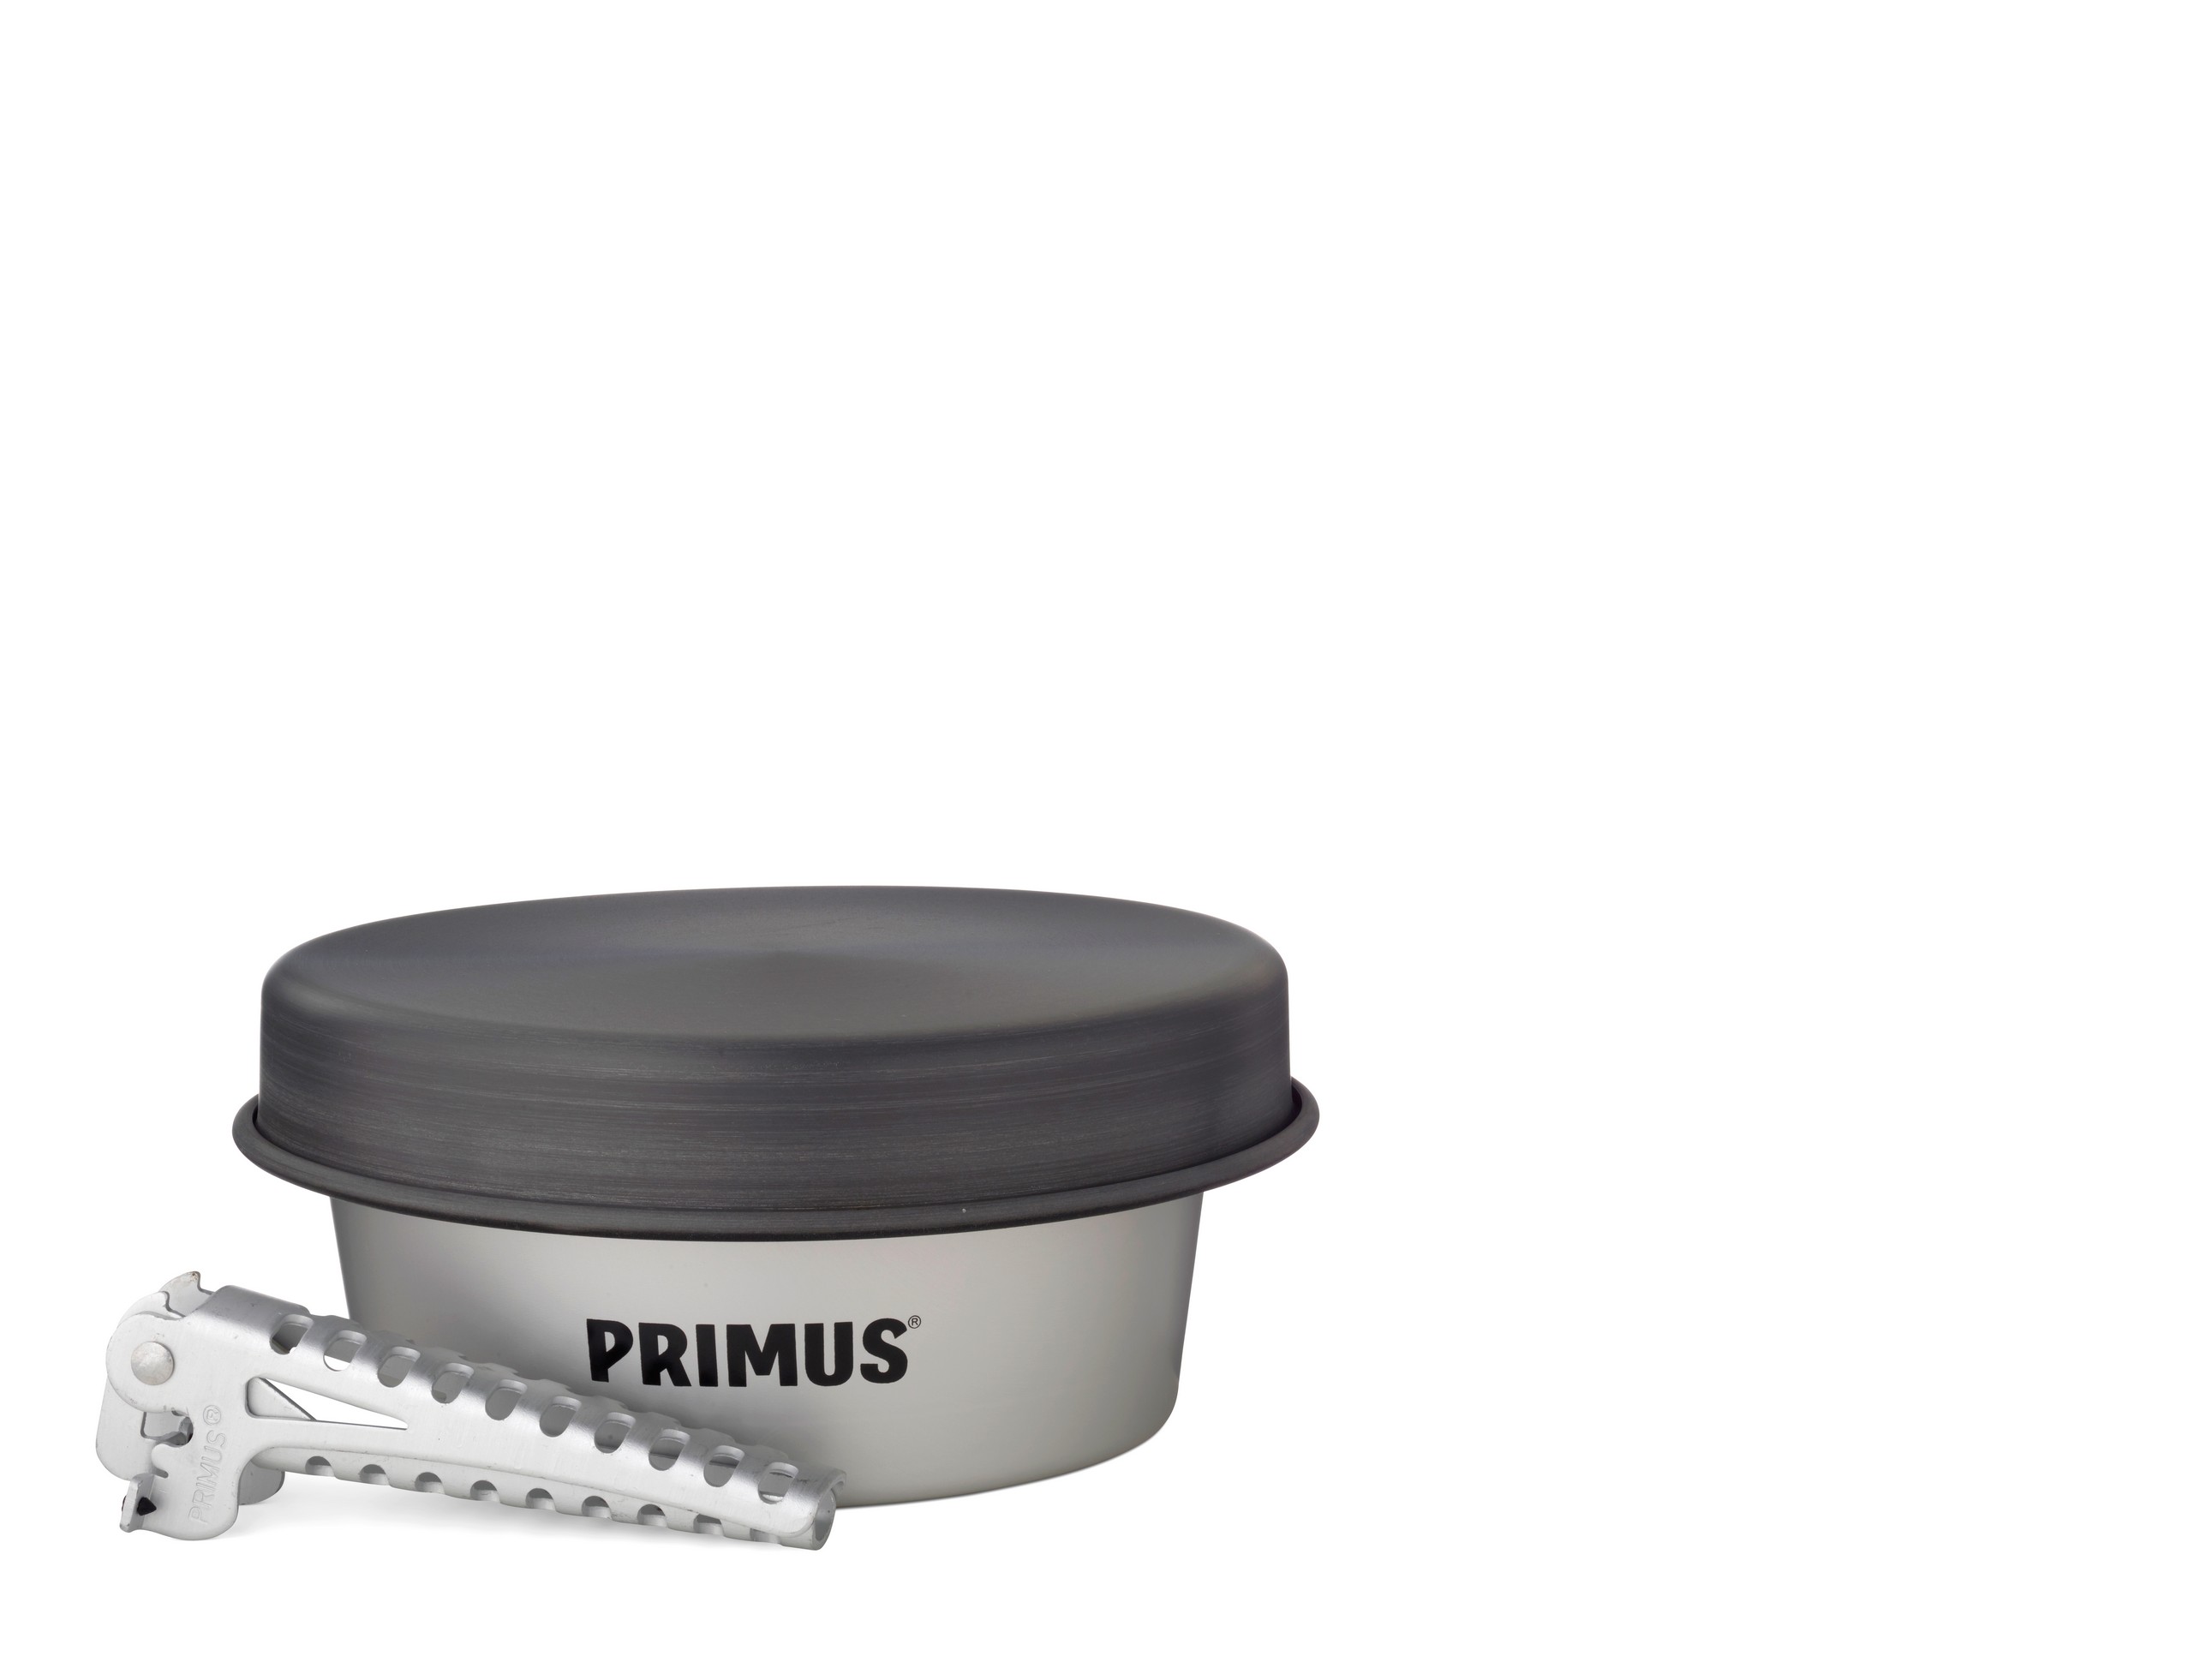 Primus "Essential Pot Set 1.3L"